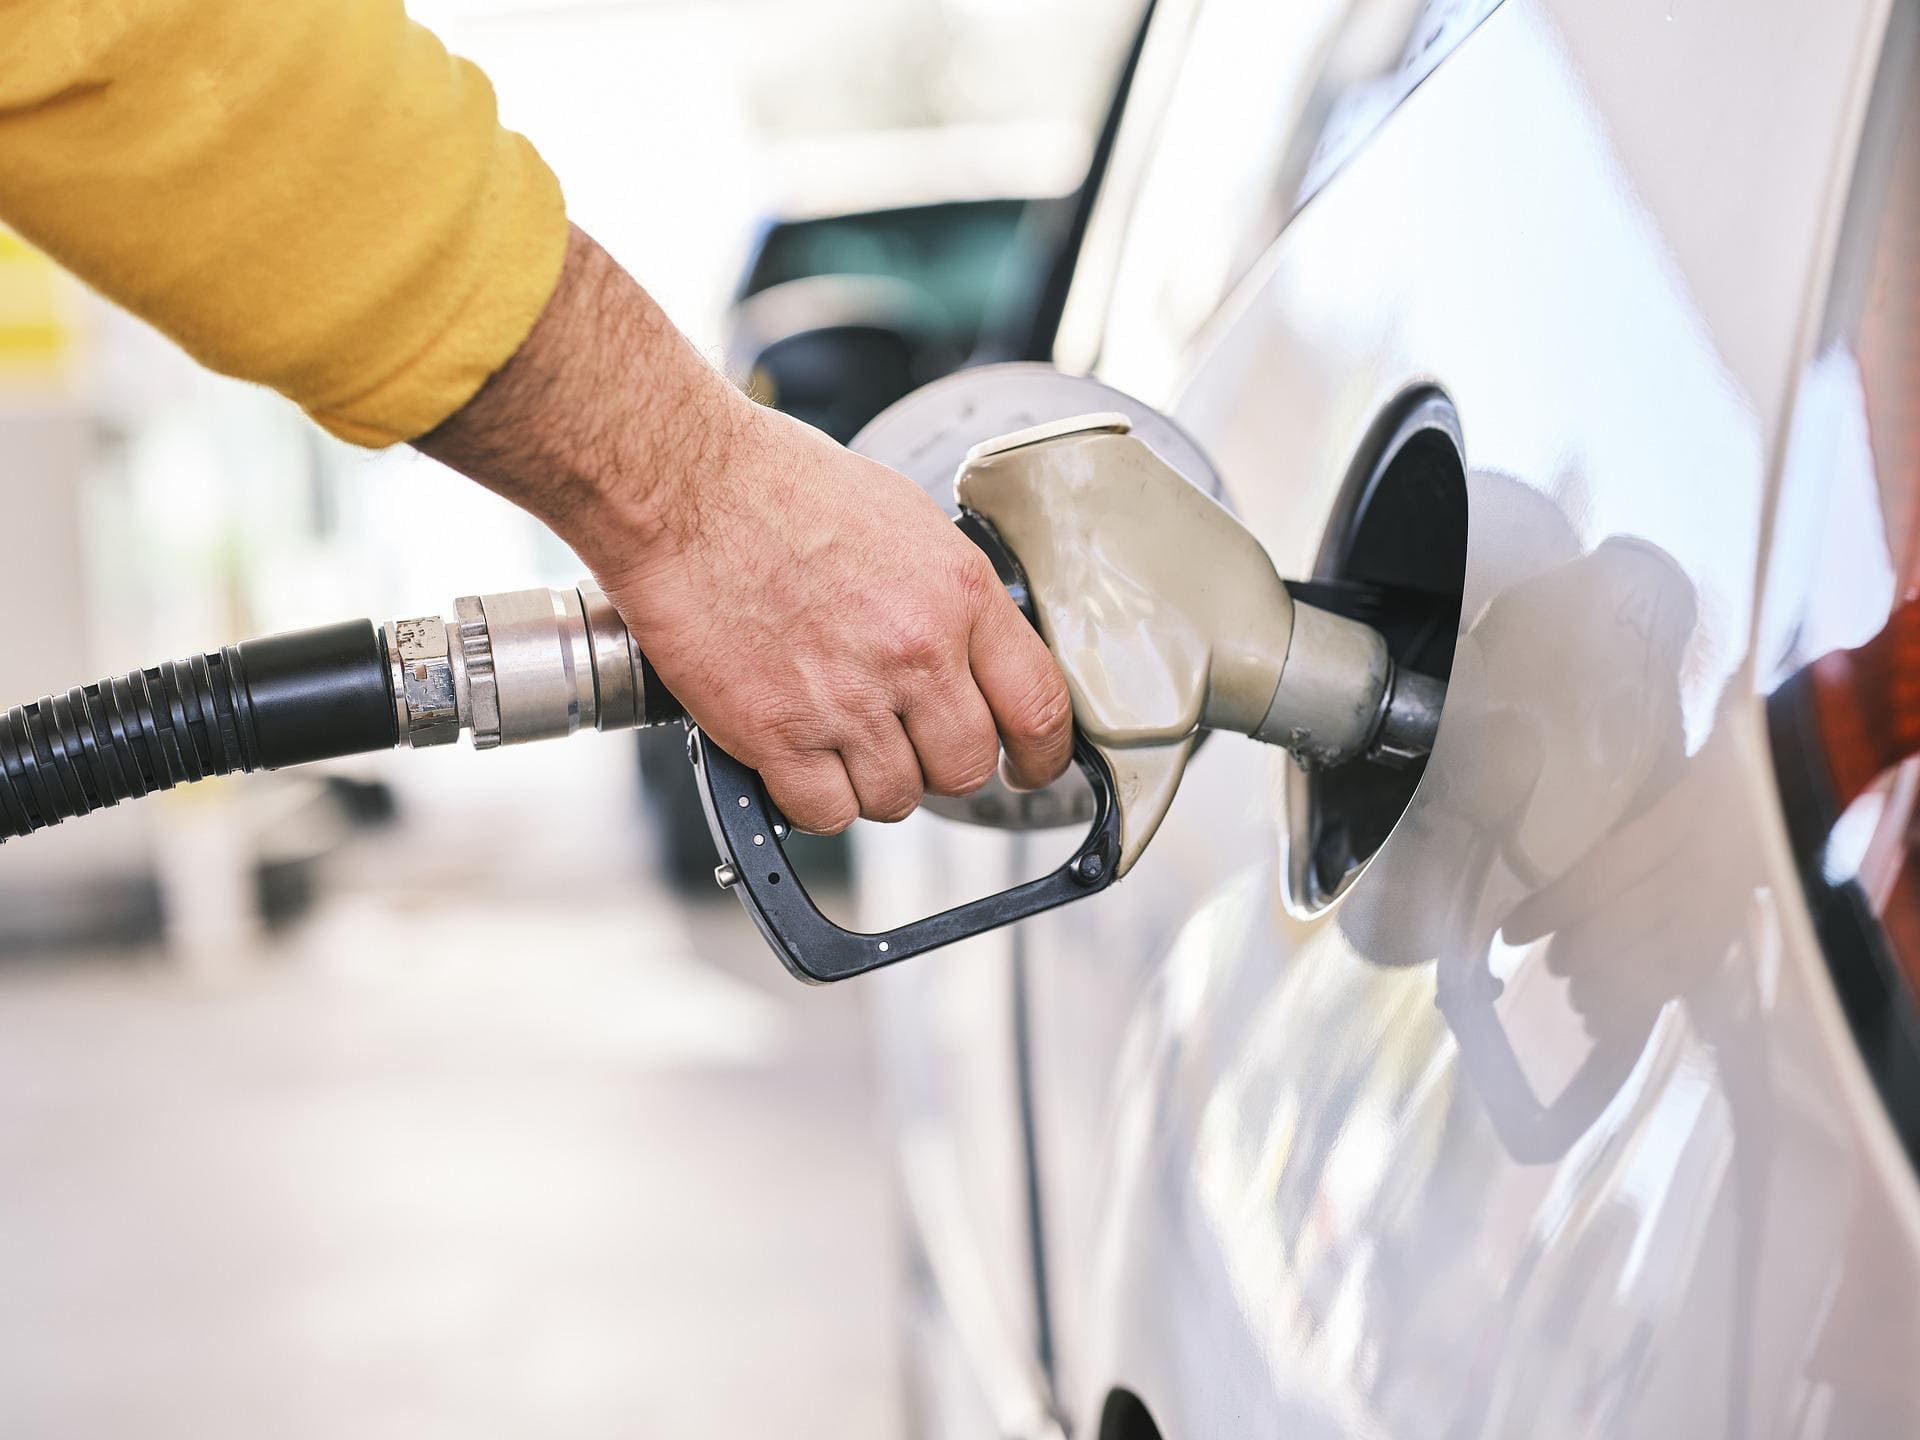 Benzin statt Diesel getankt - was tun?